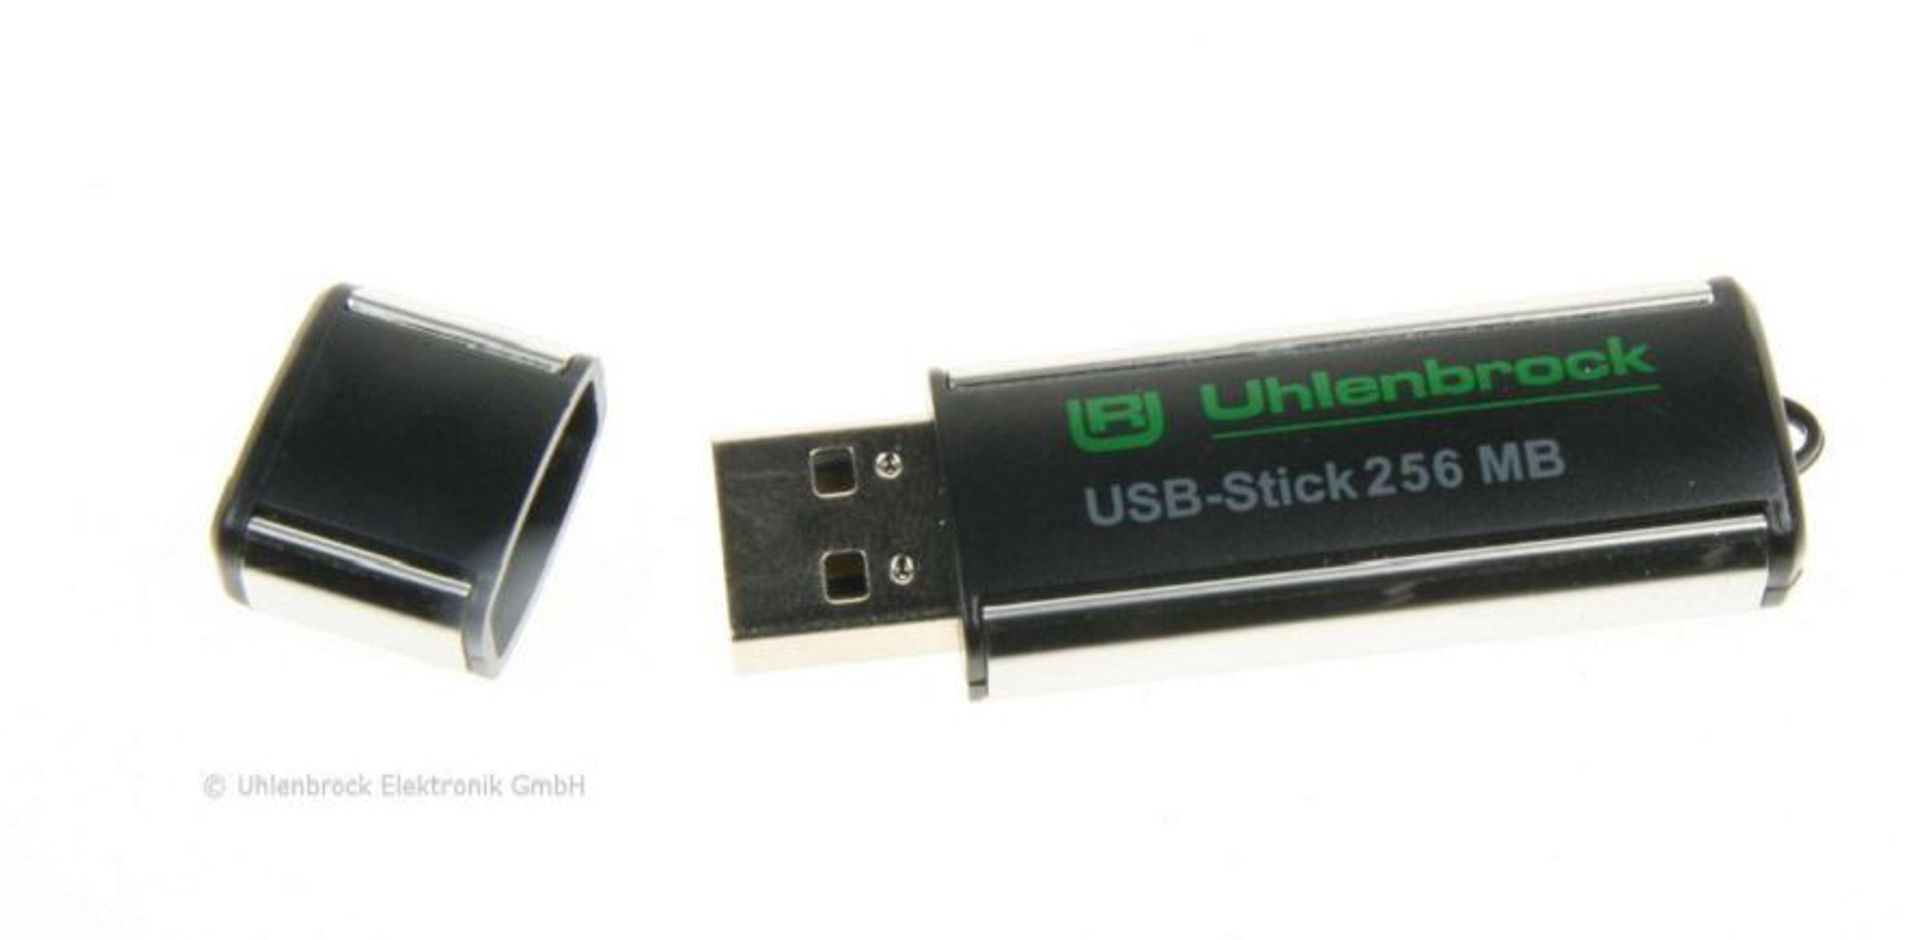 Uhlenbrock 38010 - USB-Stick mit Sounds und Sound-Director Verwaltungs-Software